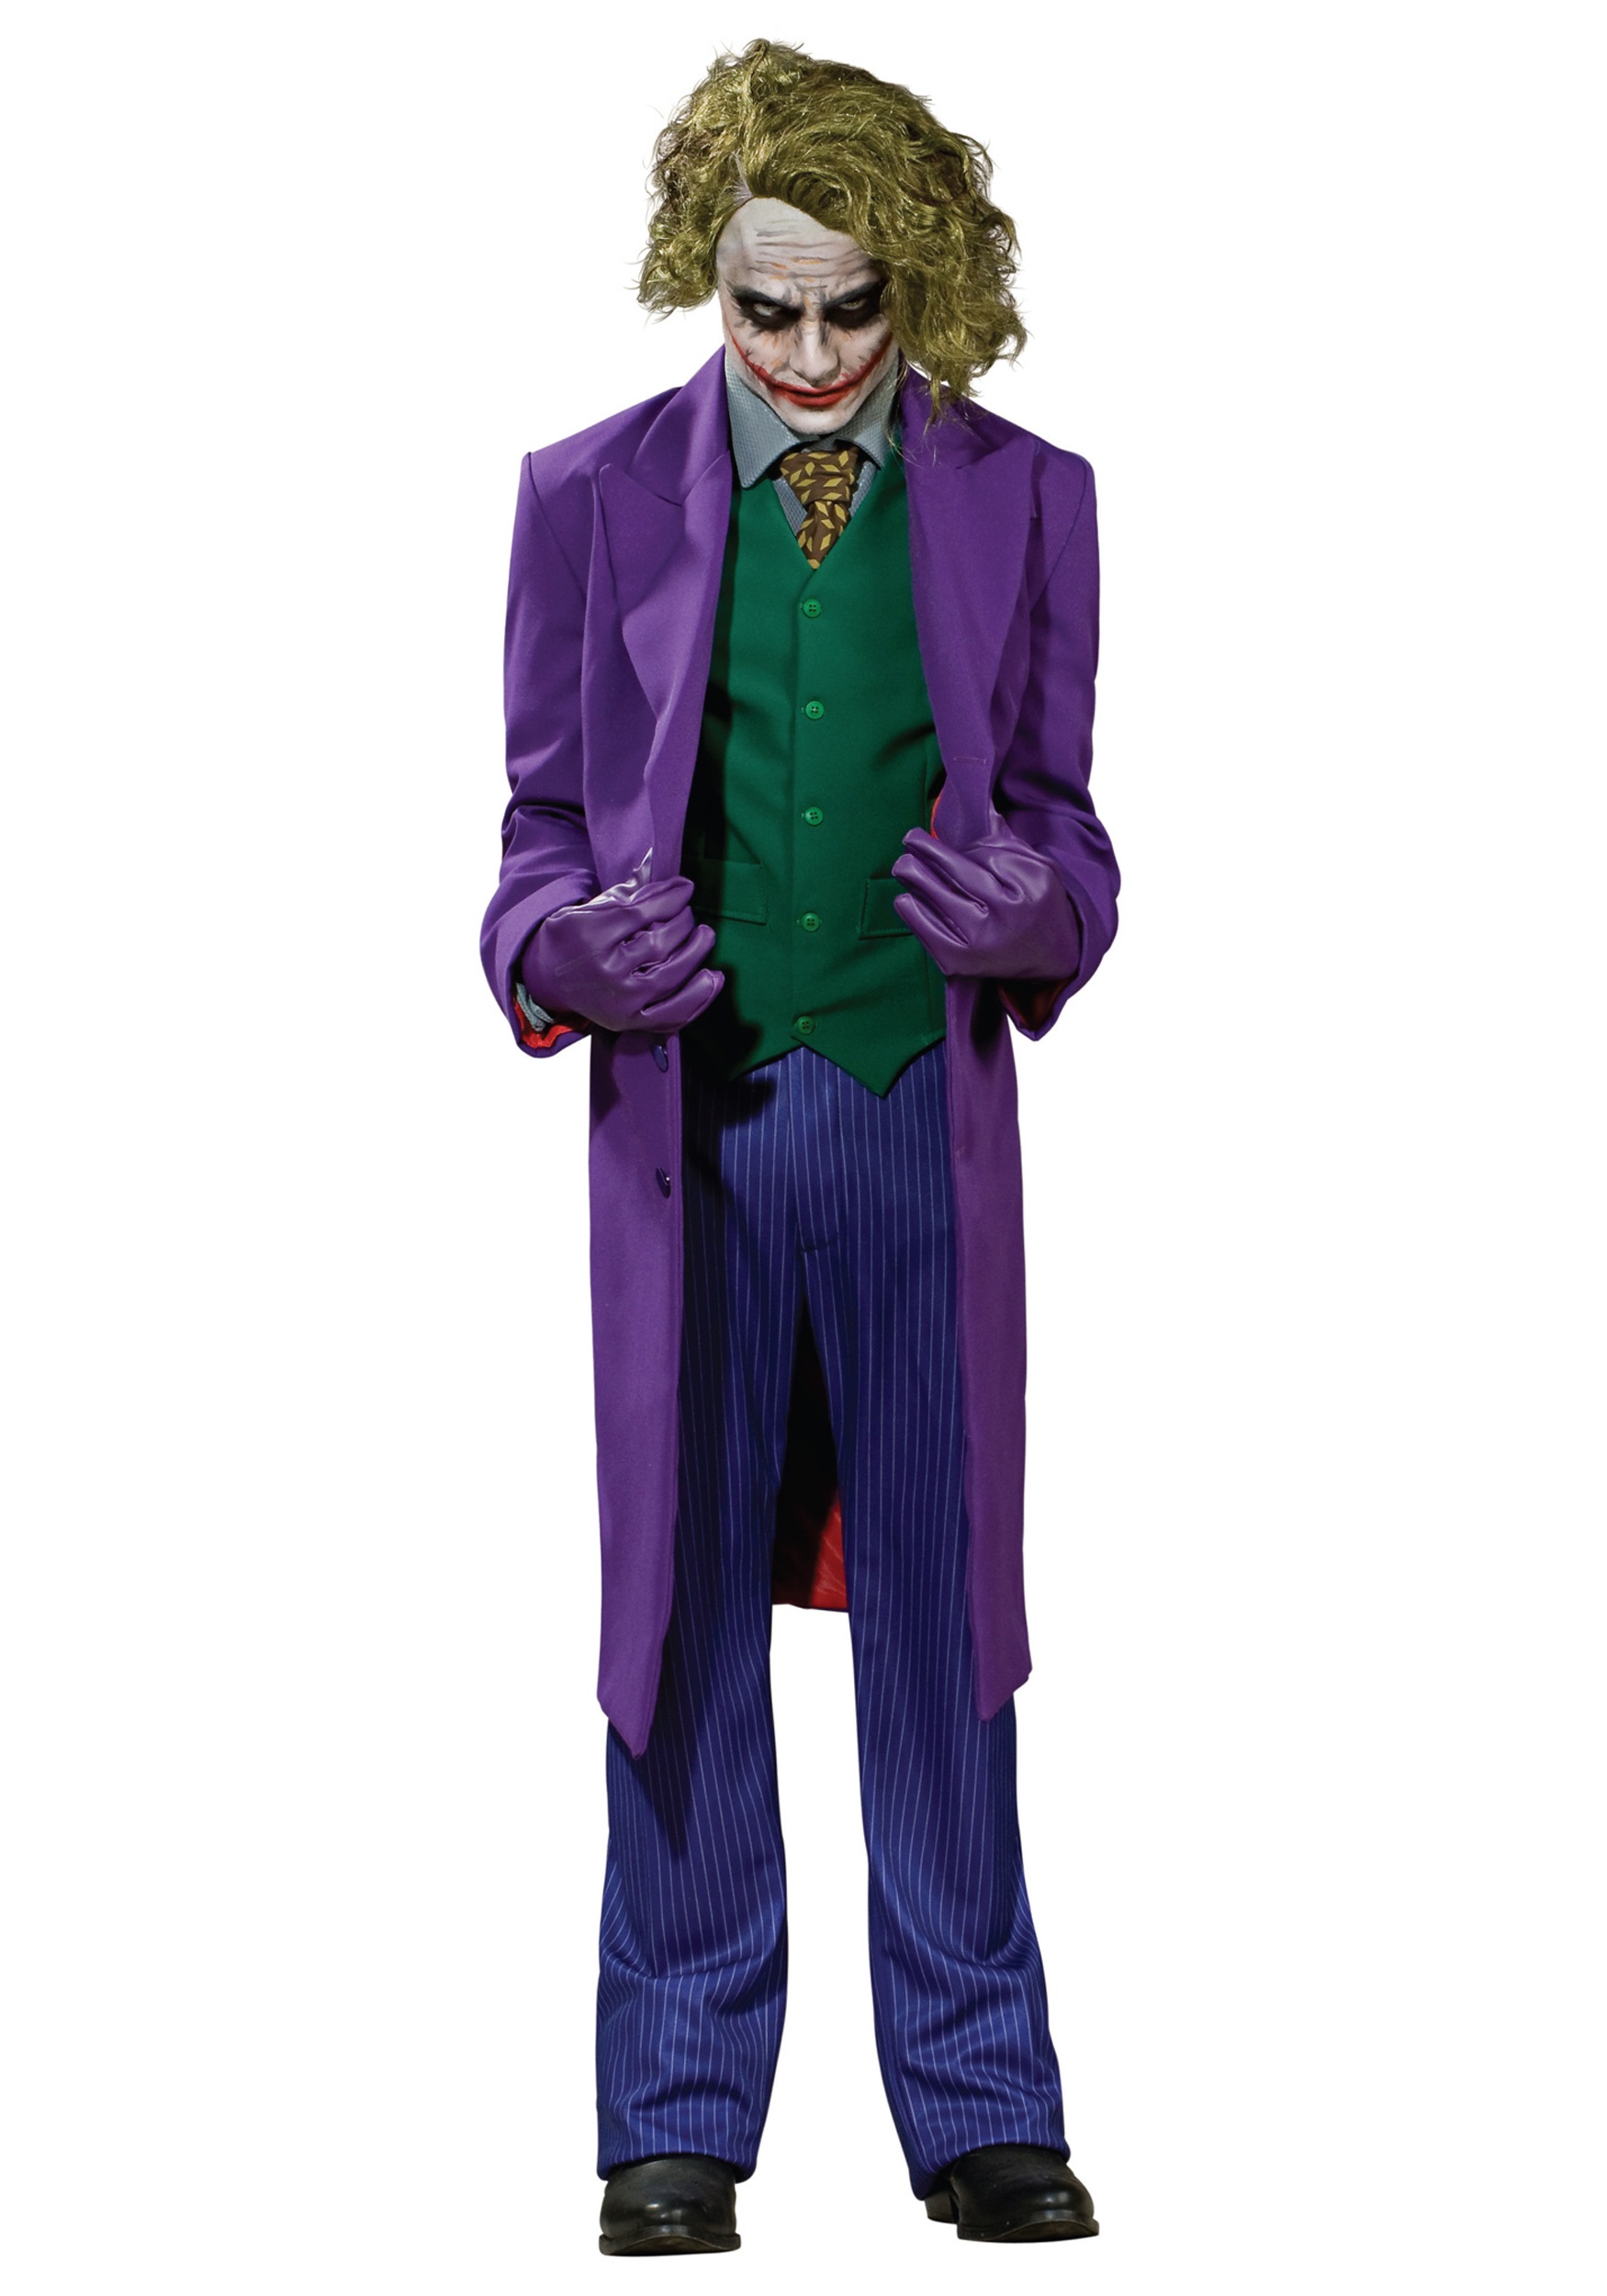 Authentic Joker Costume - Dark Knight Joker Costumes